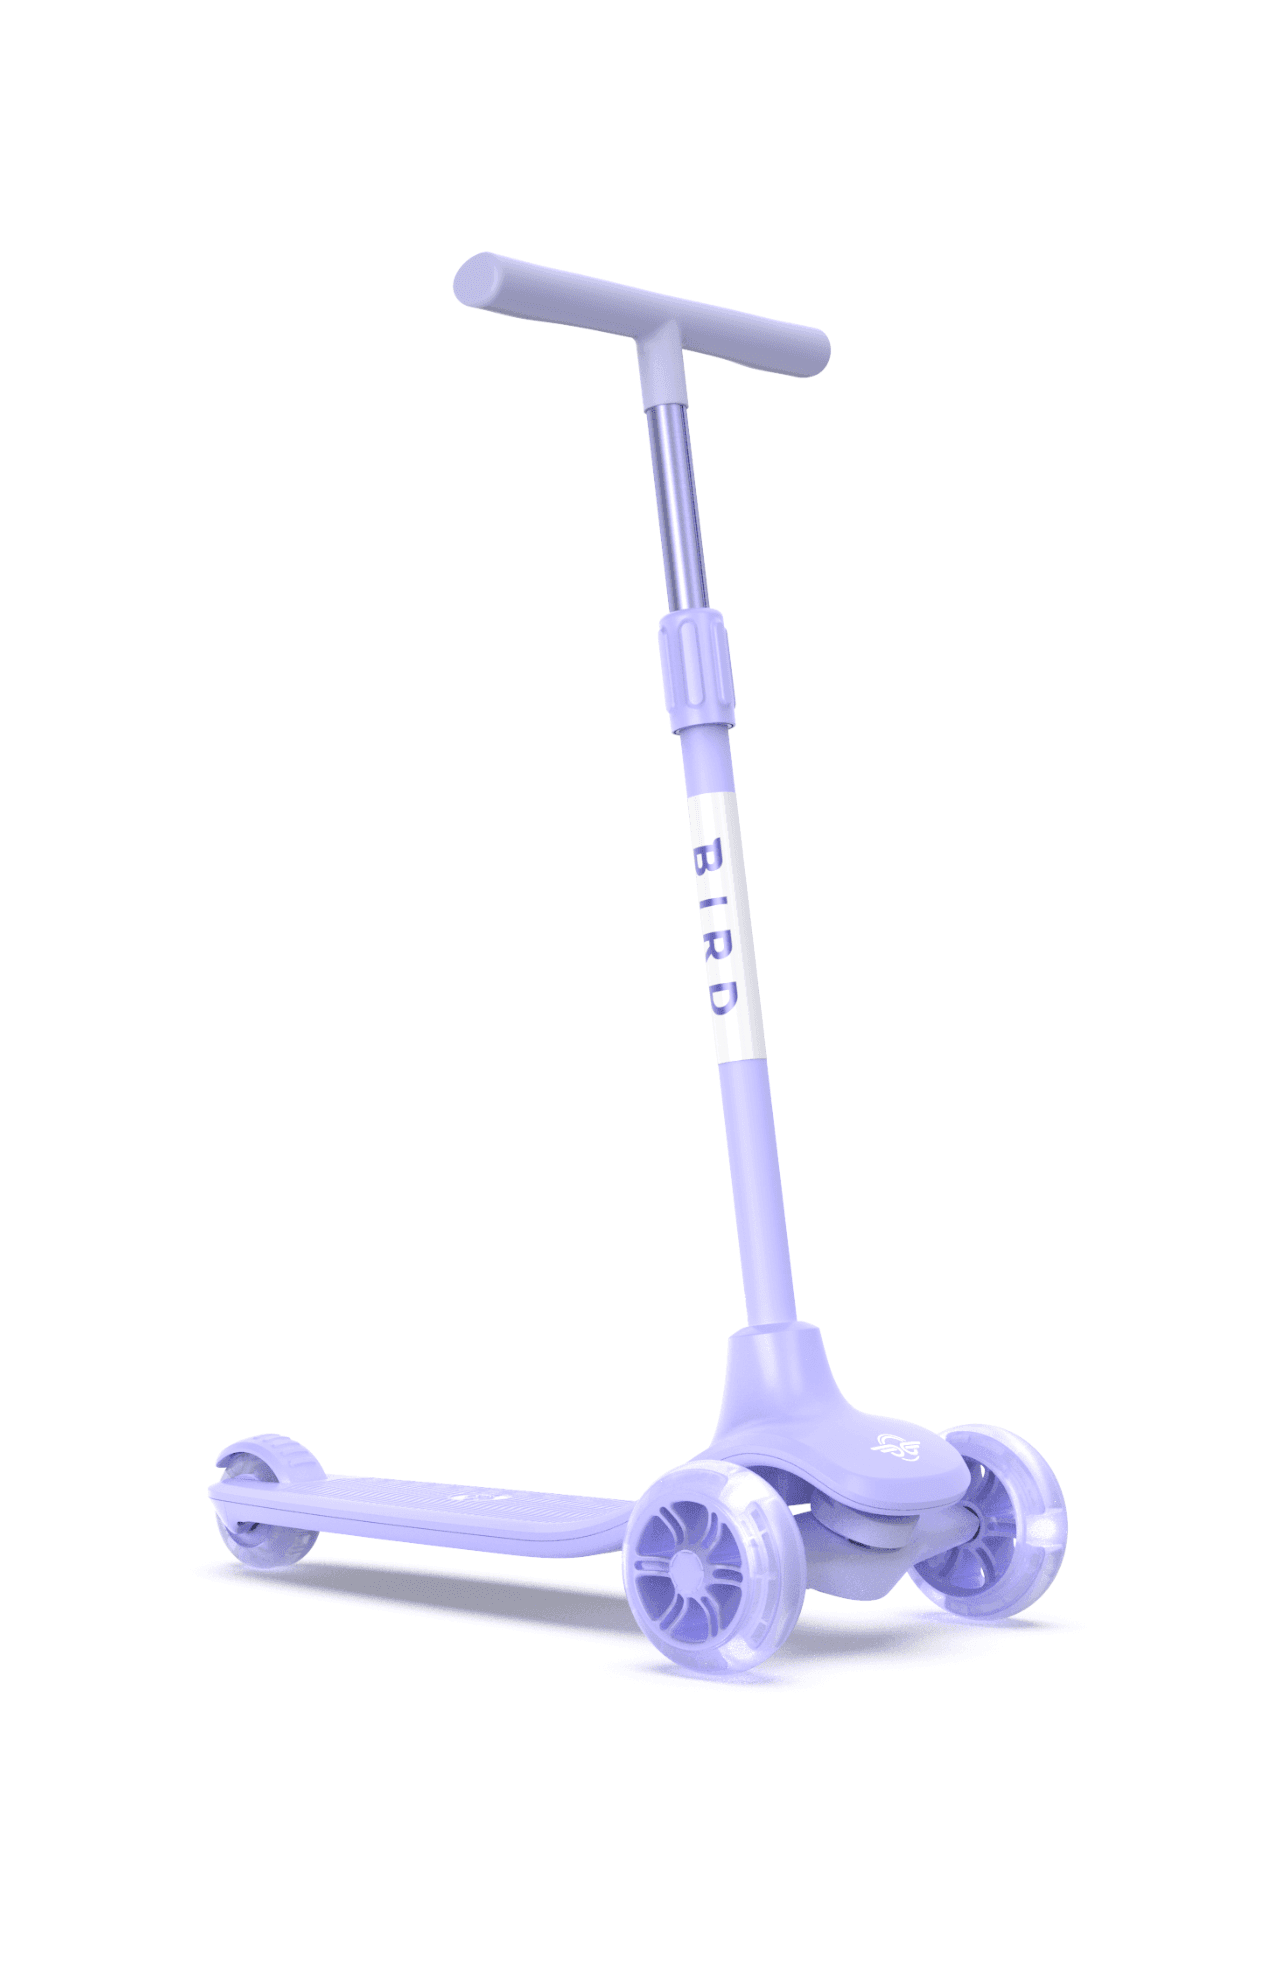 سكوتر ثلاثي العجلات للأطفال بأضواء ليد -بنفسجي Glow Kids Scooter -  Adjustable height, 3-wheels design, Stomp brake system - Bird